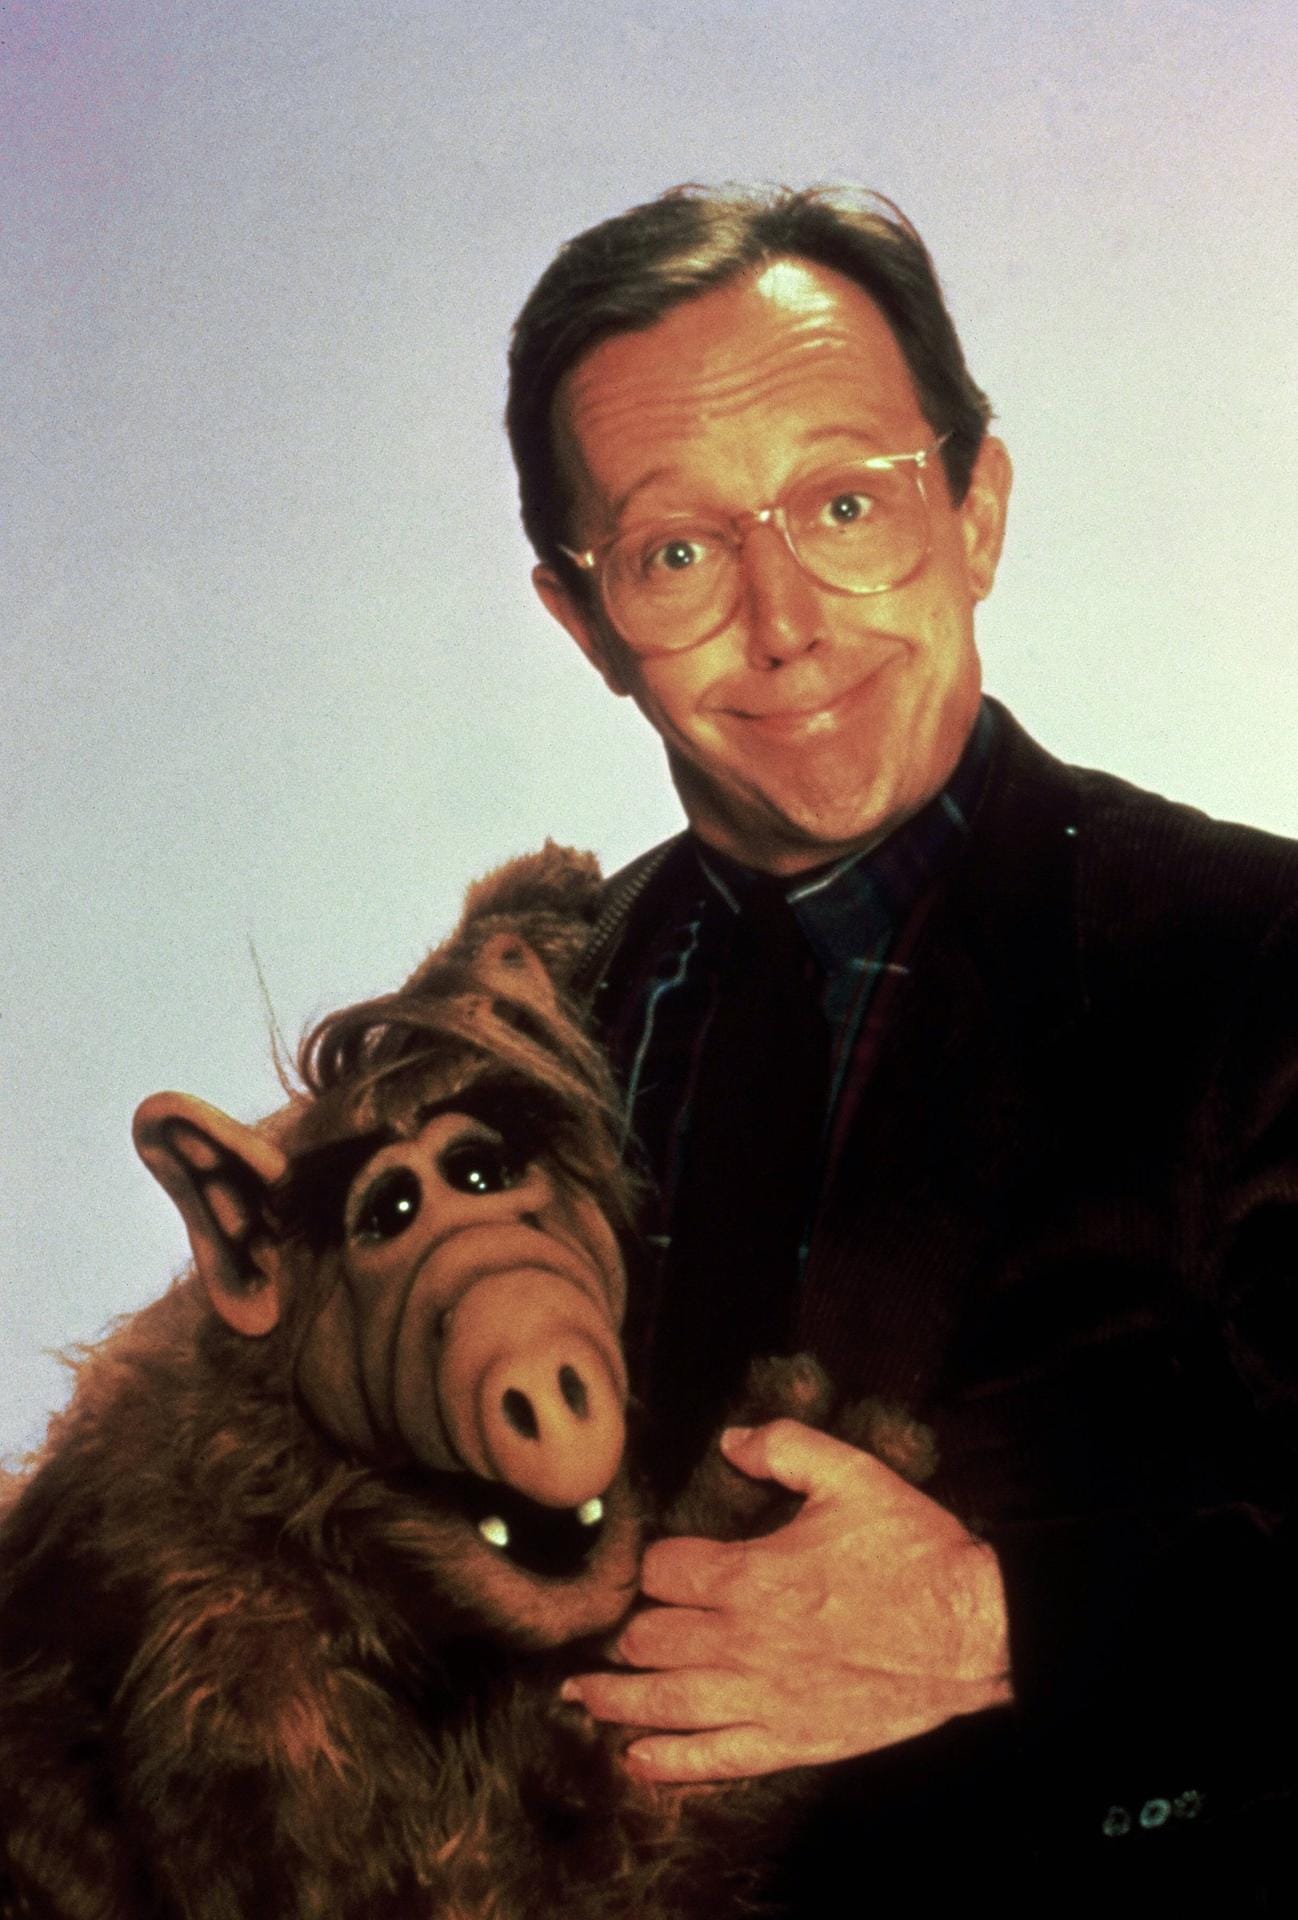 Die Kultserie "Alf" machte Max Wright in den 80er Jahren berühmt. Er spielte den braven Familienvater Willie Tanner, der das Herz am rechten Fleck hatte und dem Außerirdischen vom Planeten Melmac ein Zuhause gab.